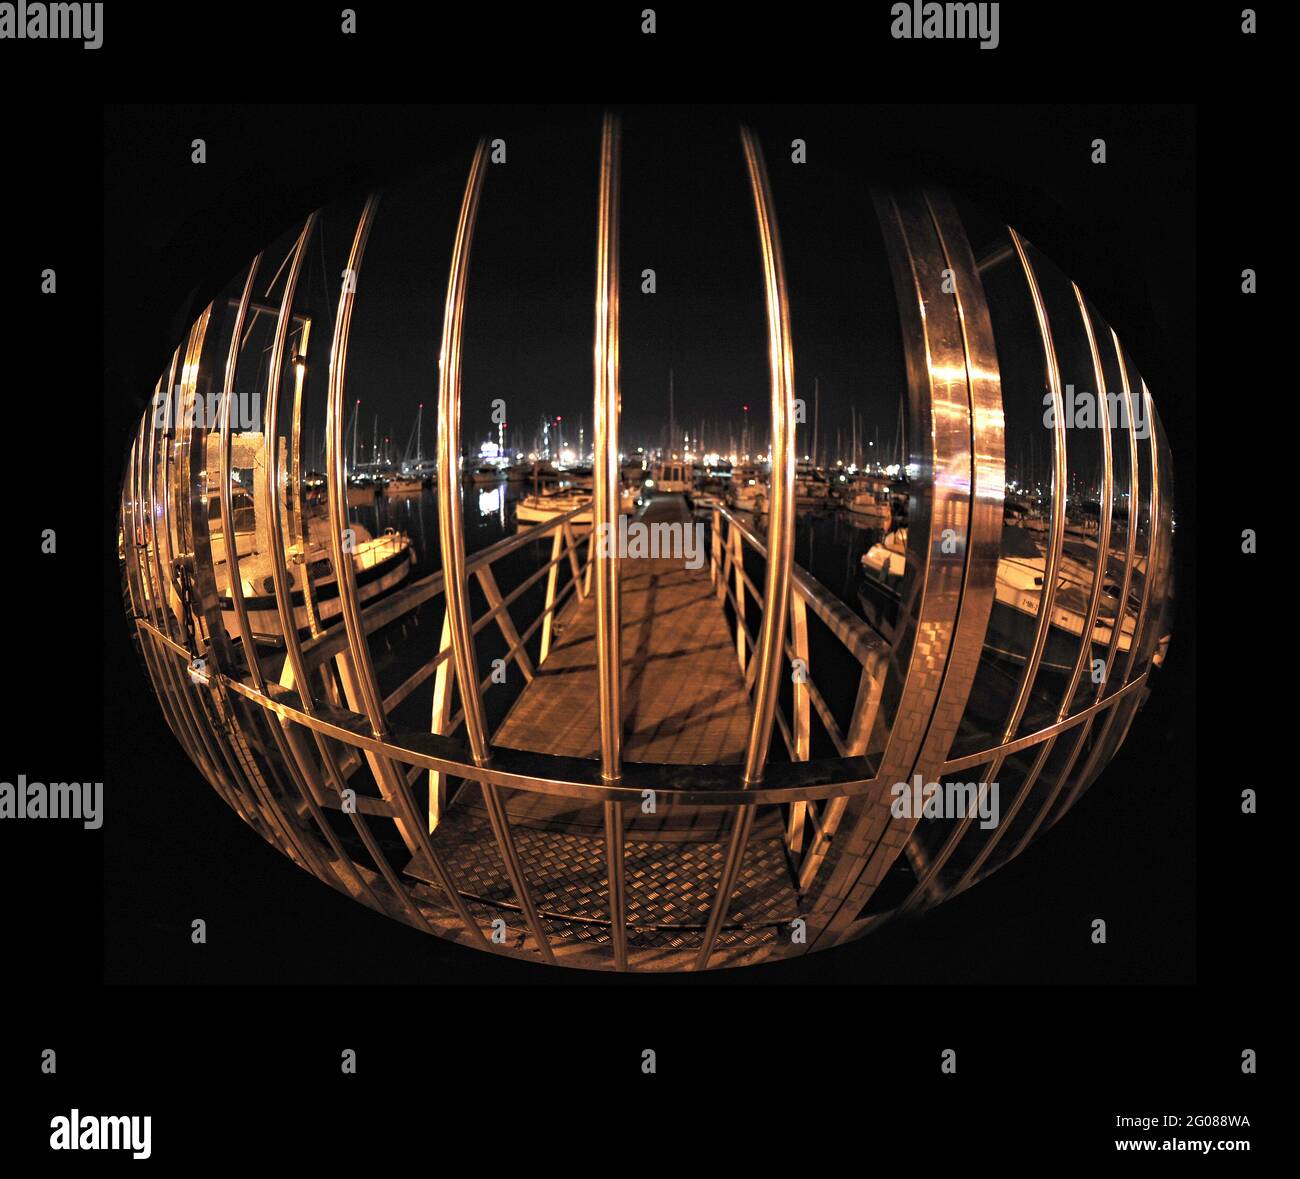 Cancellata fotografata con un fisheye e tagliata a forma ovale Banque D'Images